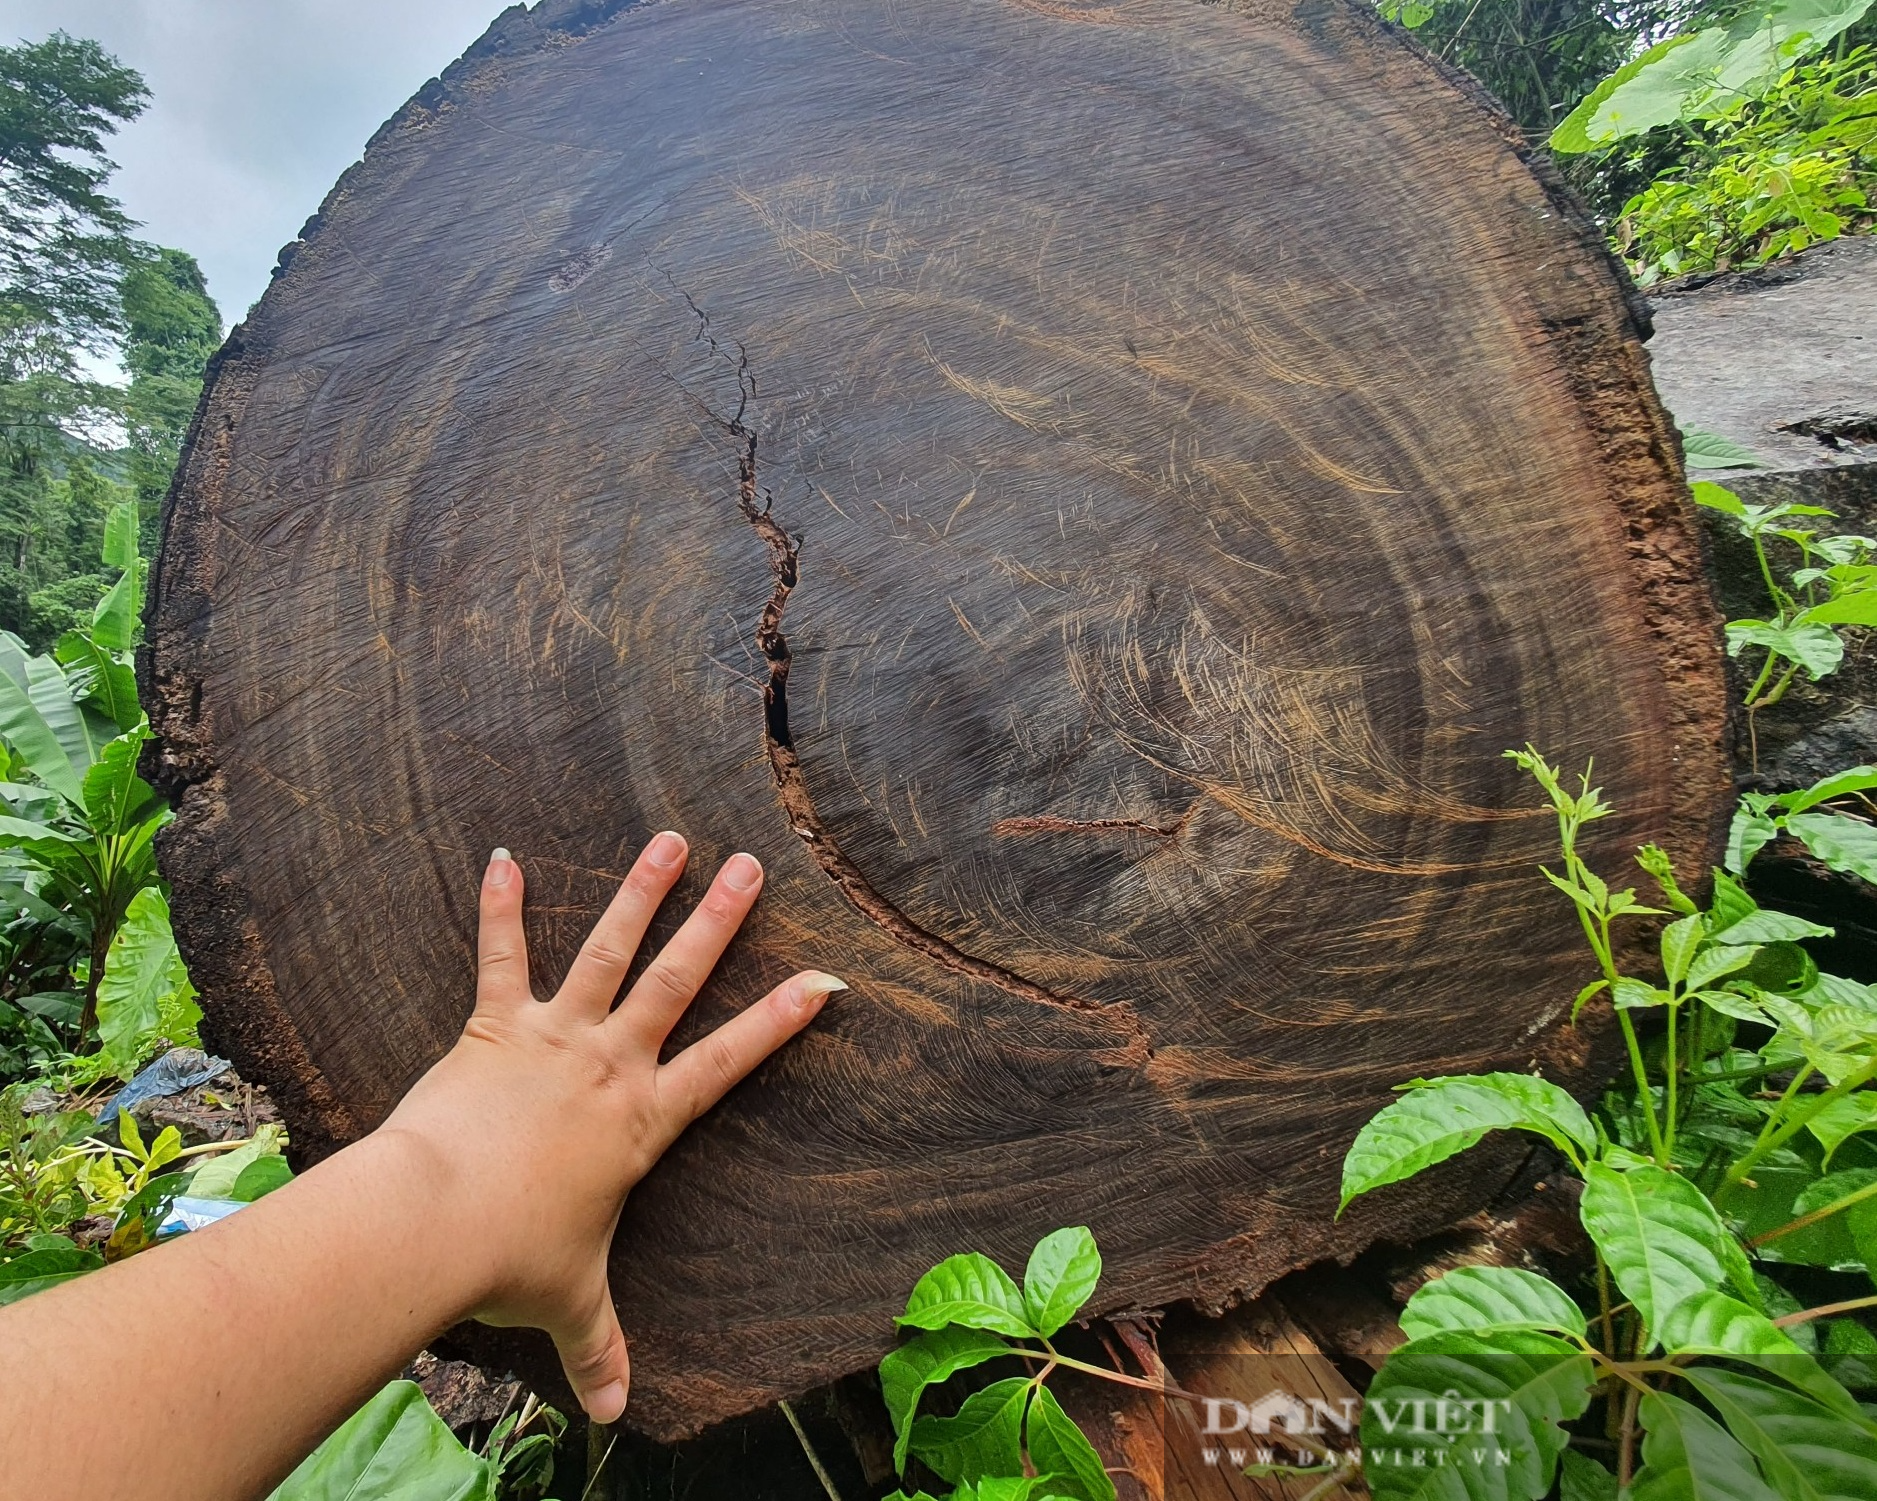 Cục Kiểm lâm chỉ đạo “nóng” vụ phá rừng quy mô lớn chưa từng có ở Hà Giang - Ảnh 1.